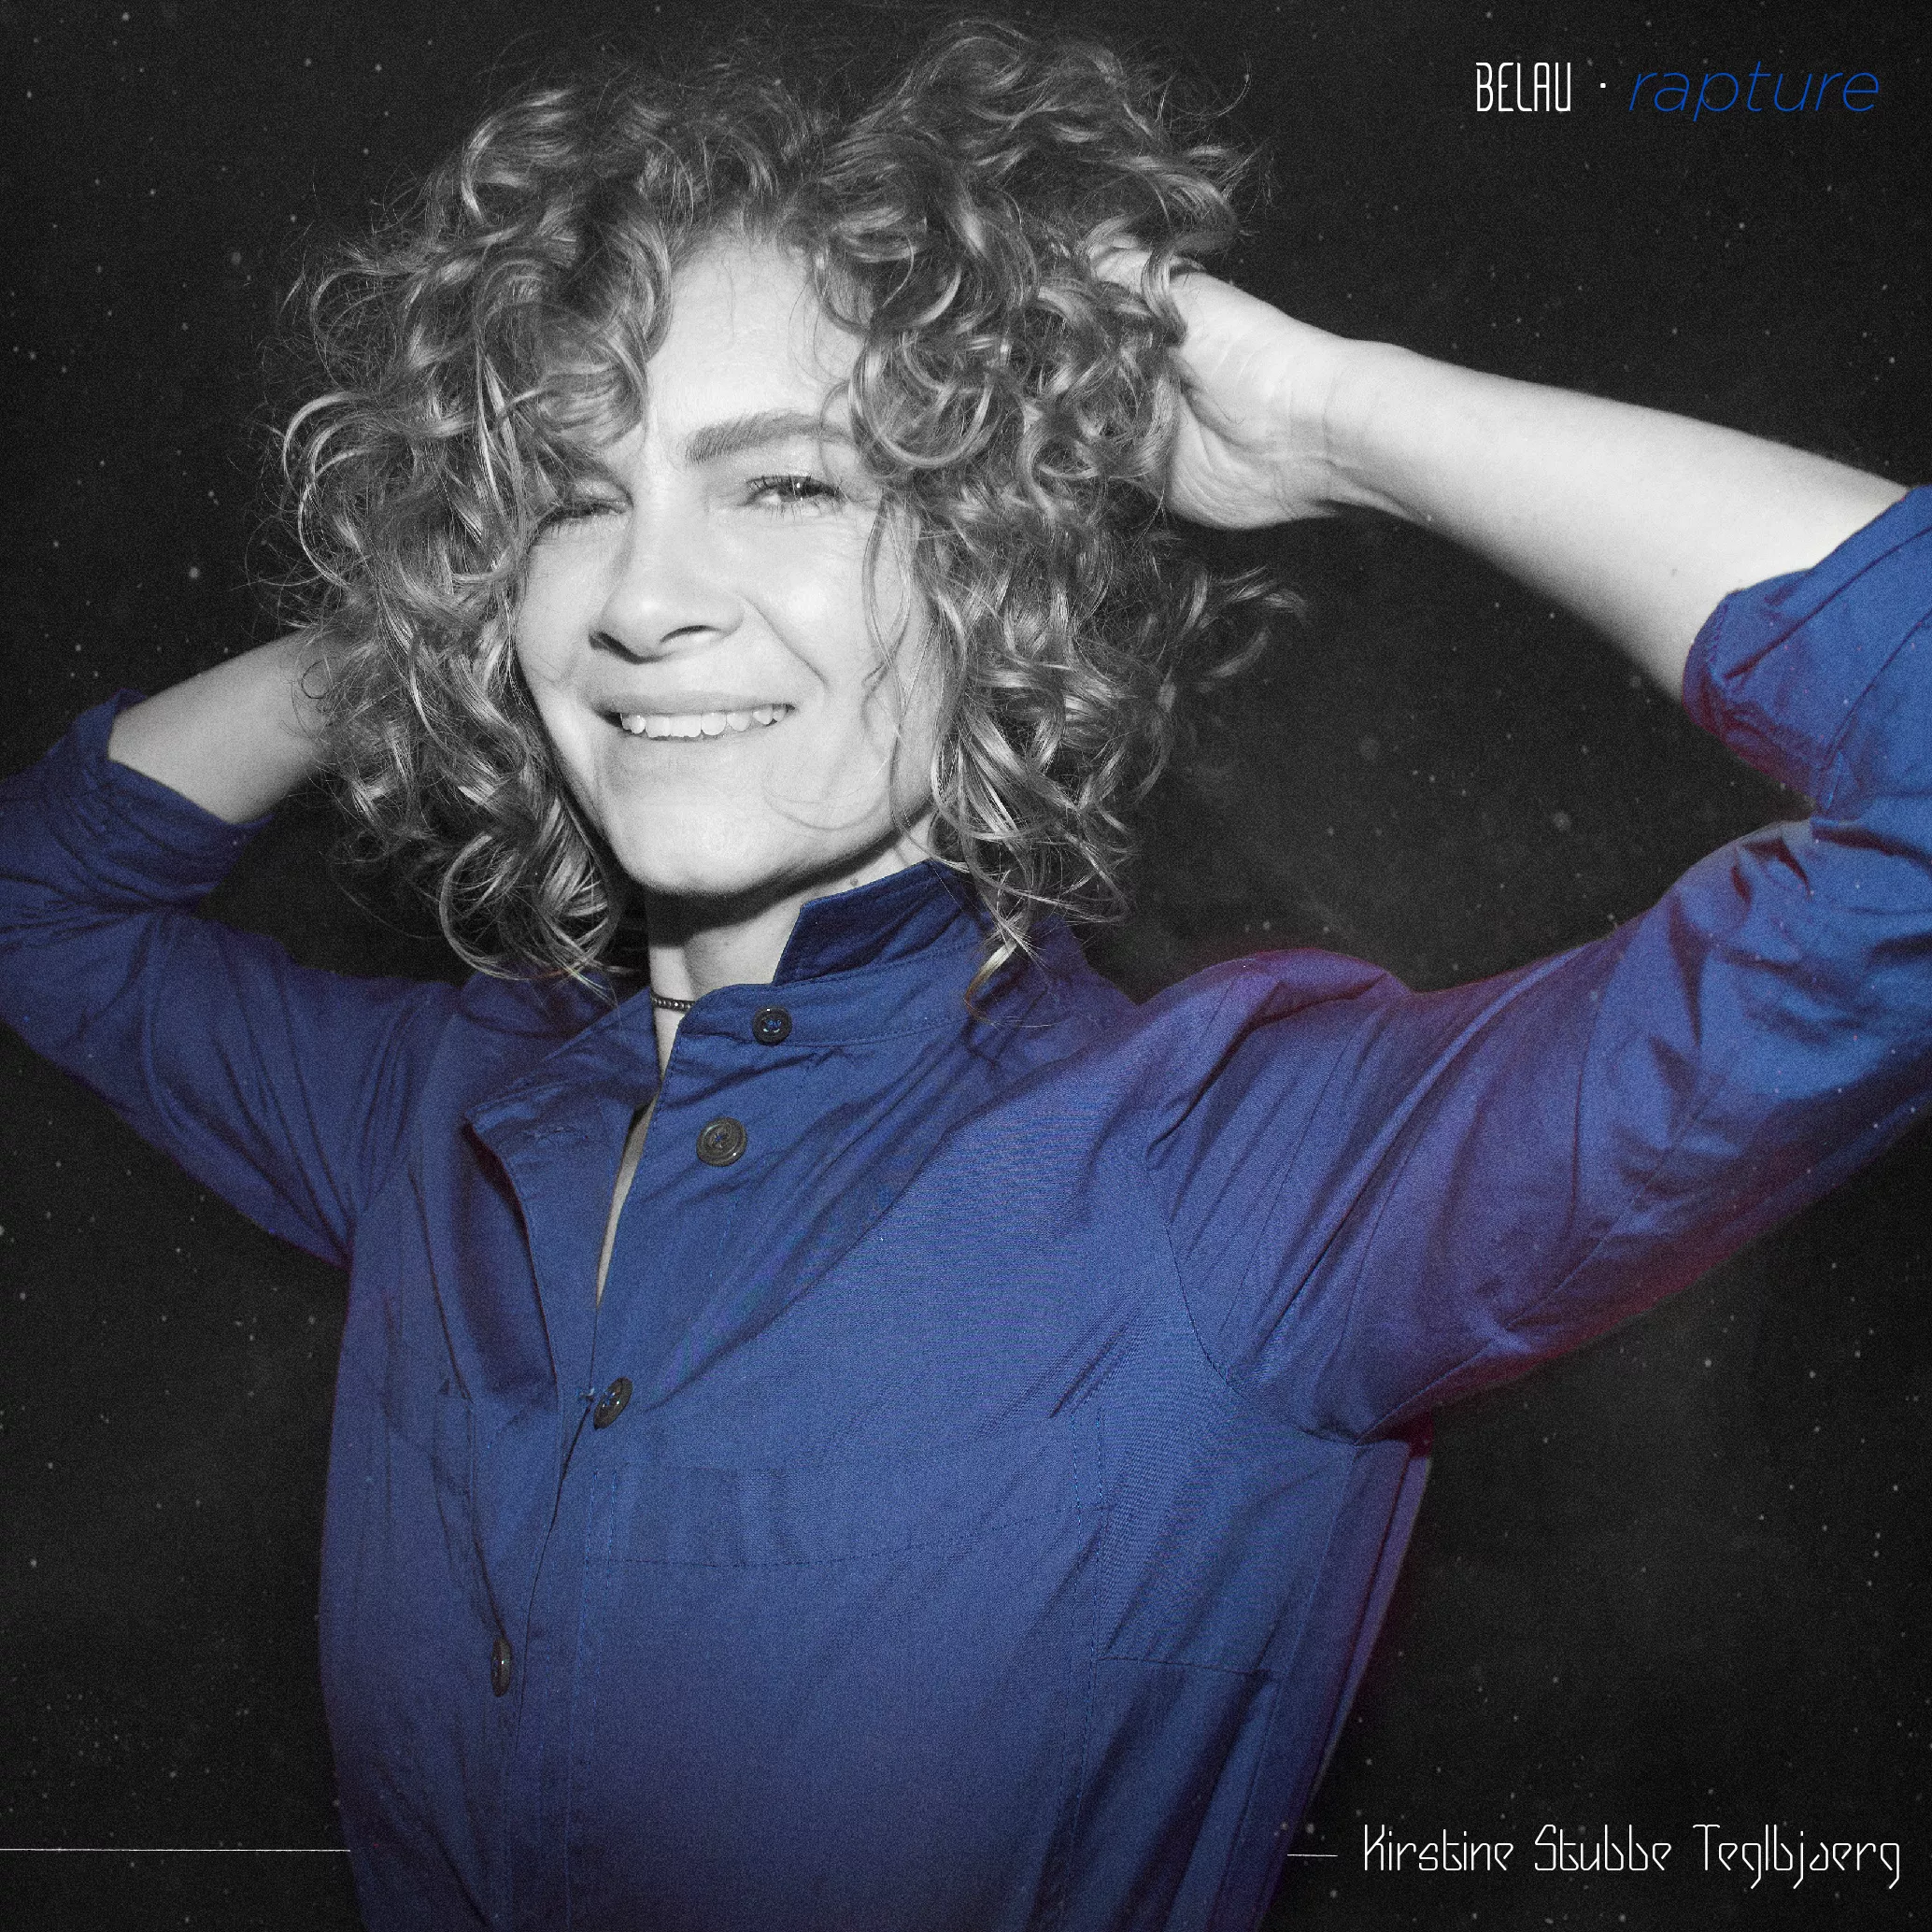 Blue Foundation-stemmen Kirstine Stubbe Teglbjærg tilbage med første nye sang i syv år